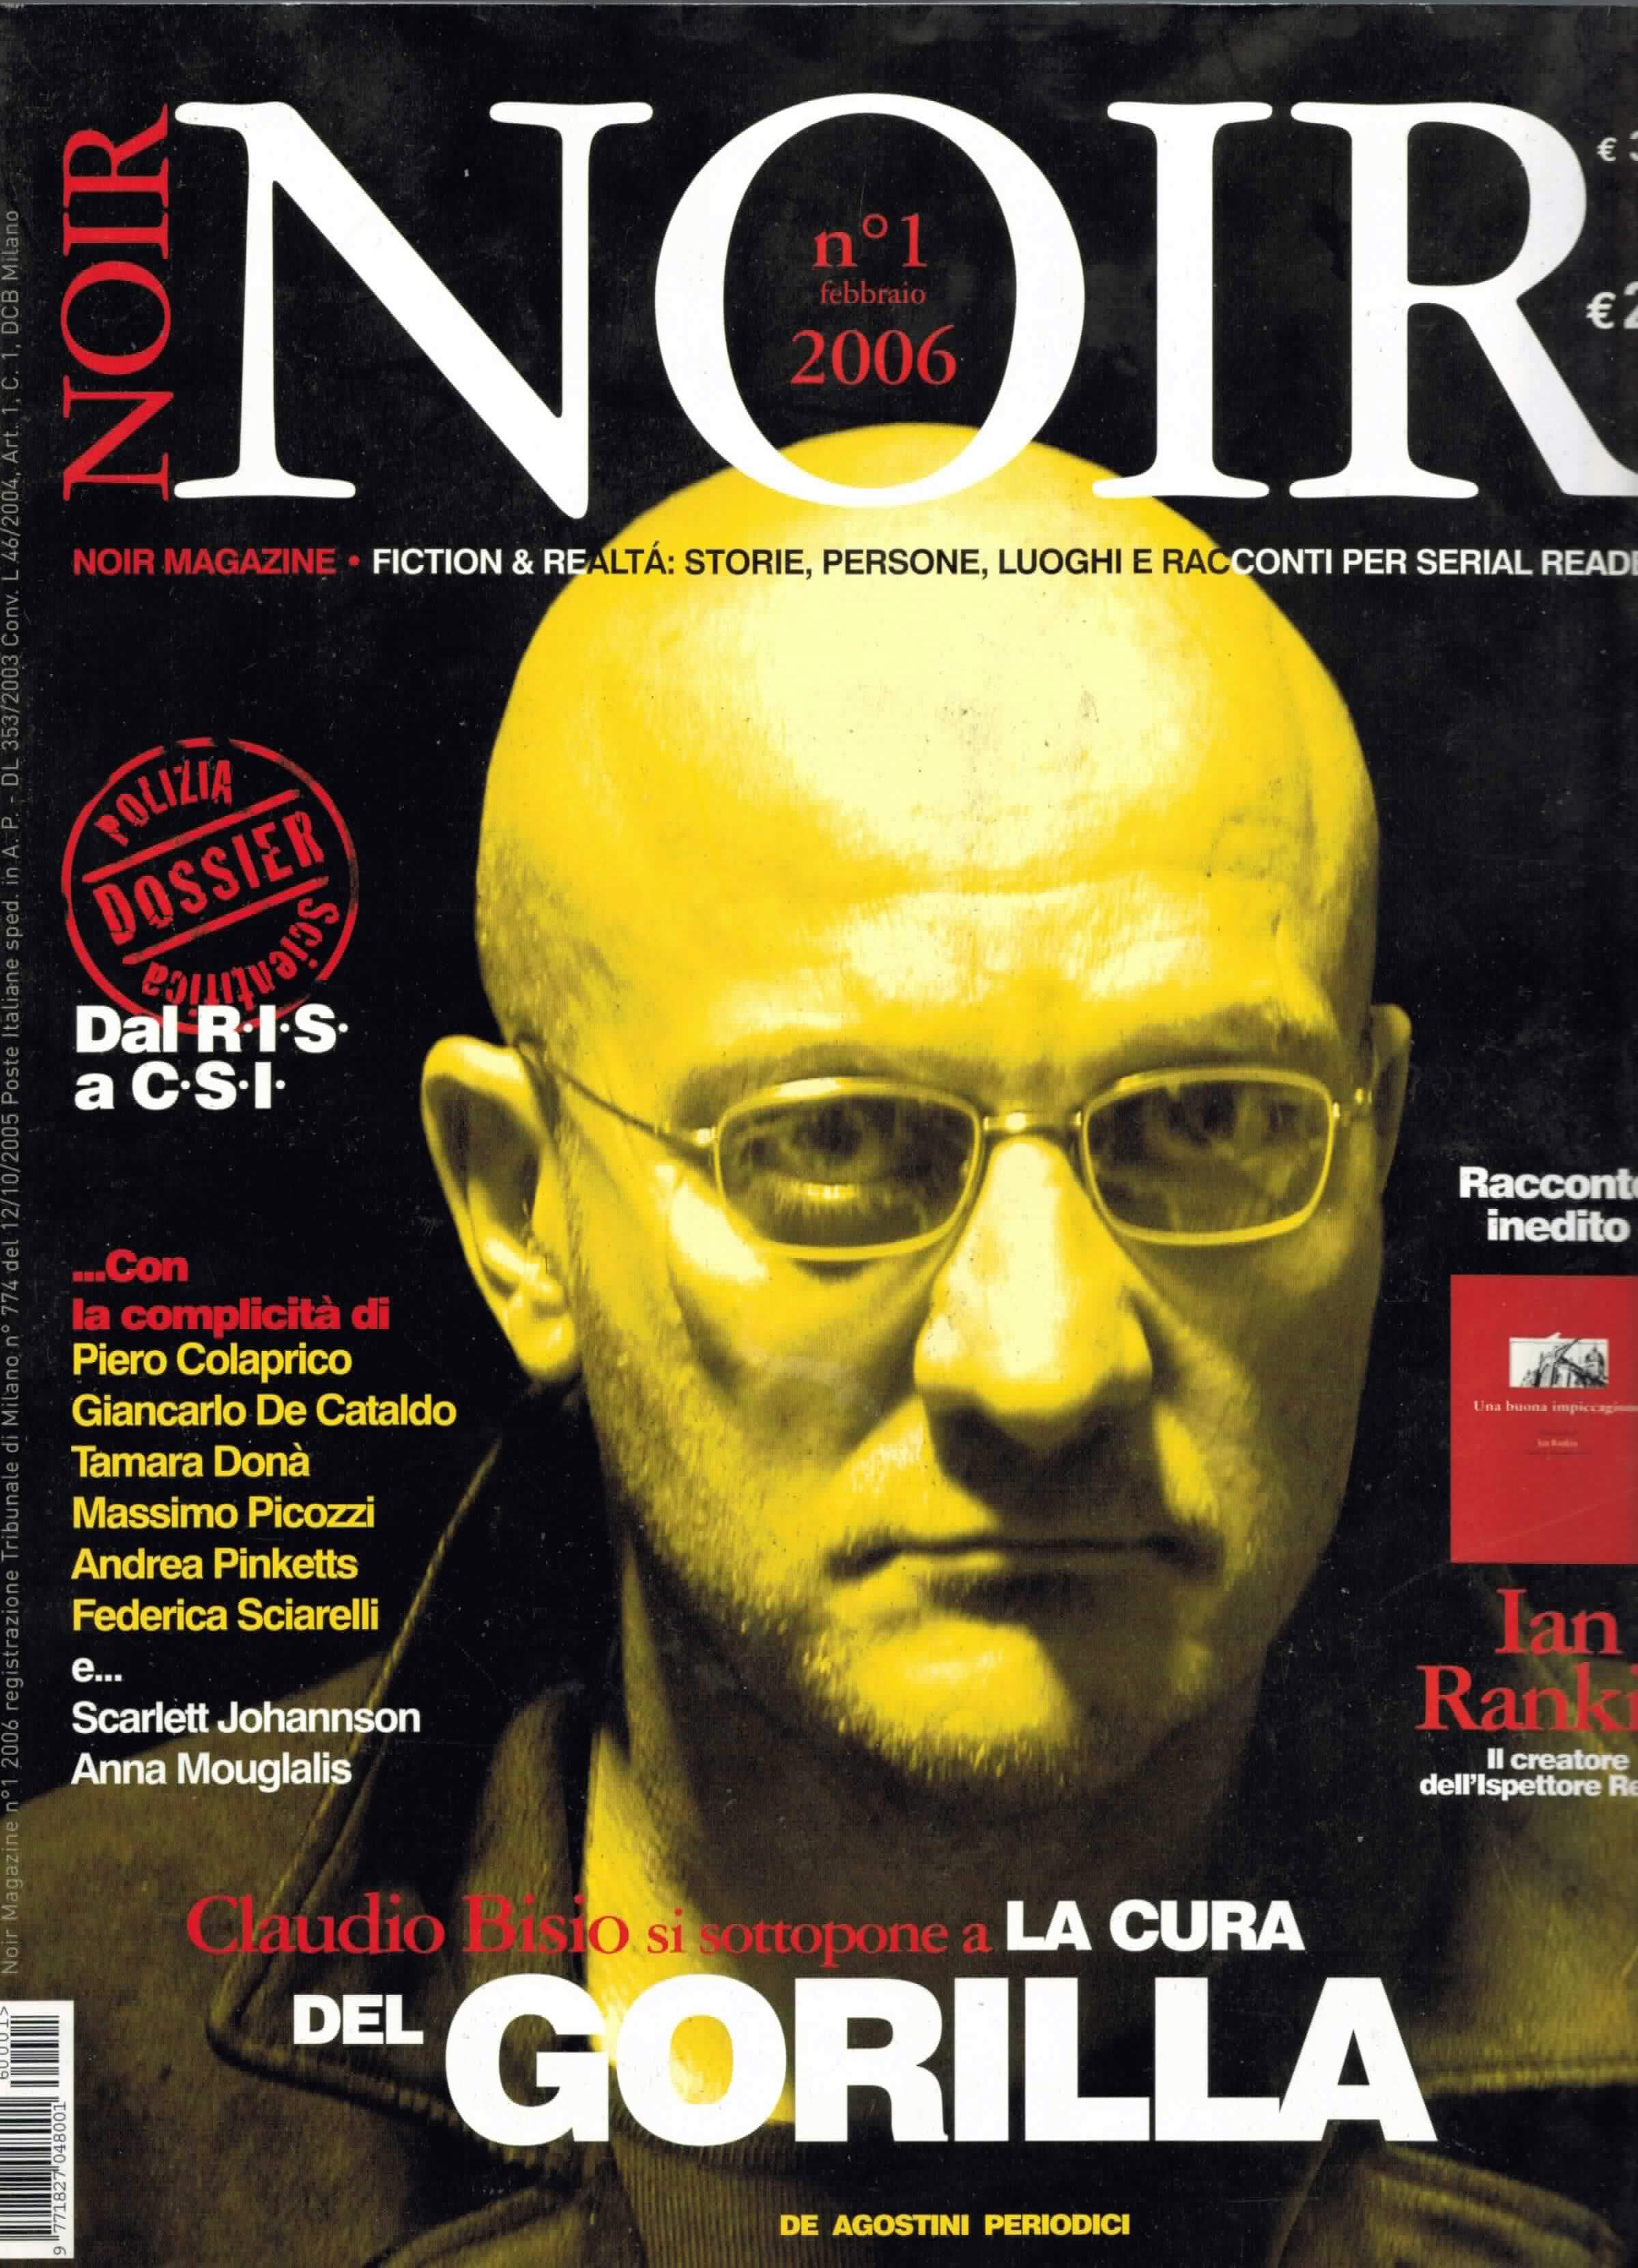 Carlo Bui, direttore dell'UACV, articolo sulla rivista NOIR dal titolo Scritto nel sangue